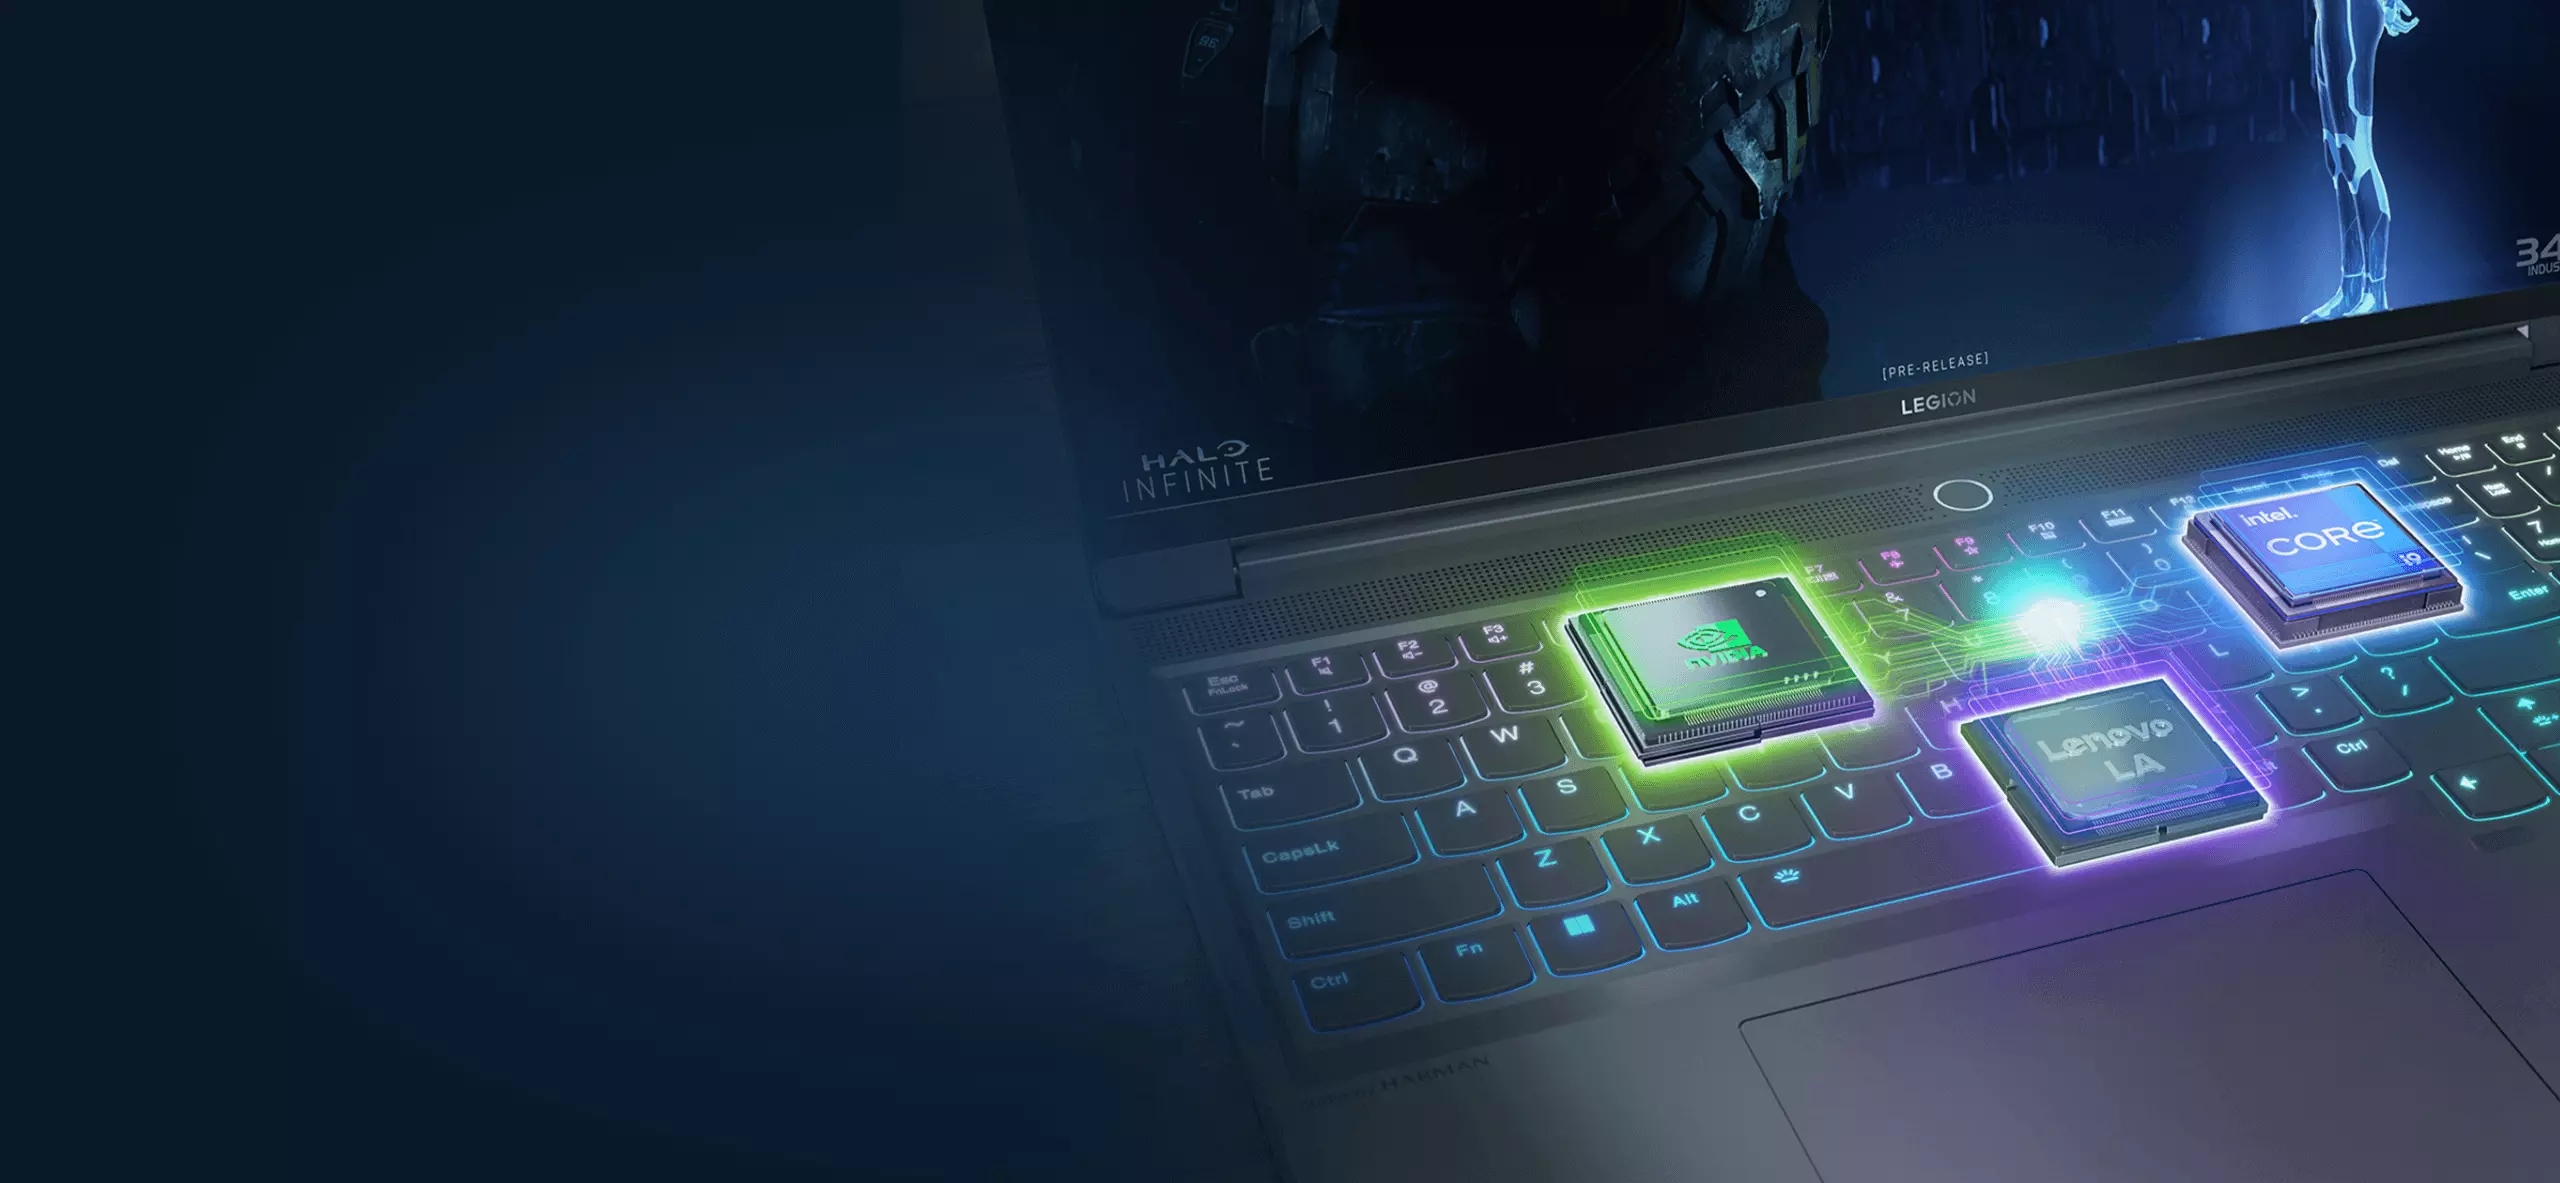 На крупном плане ноутбука Lenovo Legion Pro 5, обращенного экраном вправо, видна клавиатура с многоцветной подсветкой и дисплей.